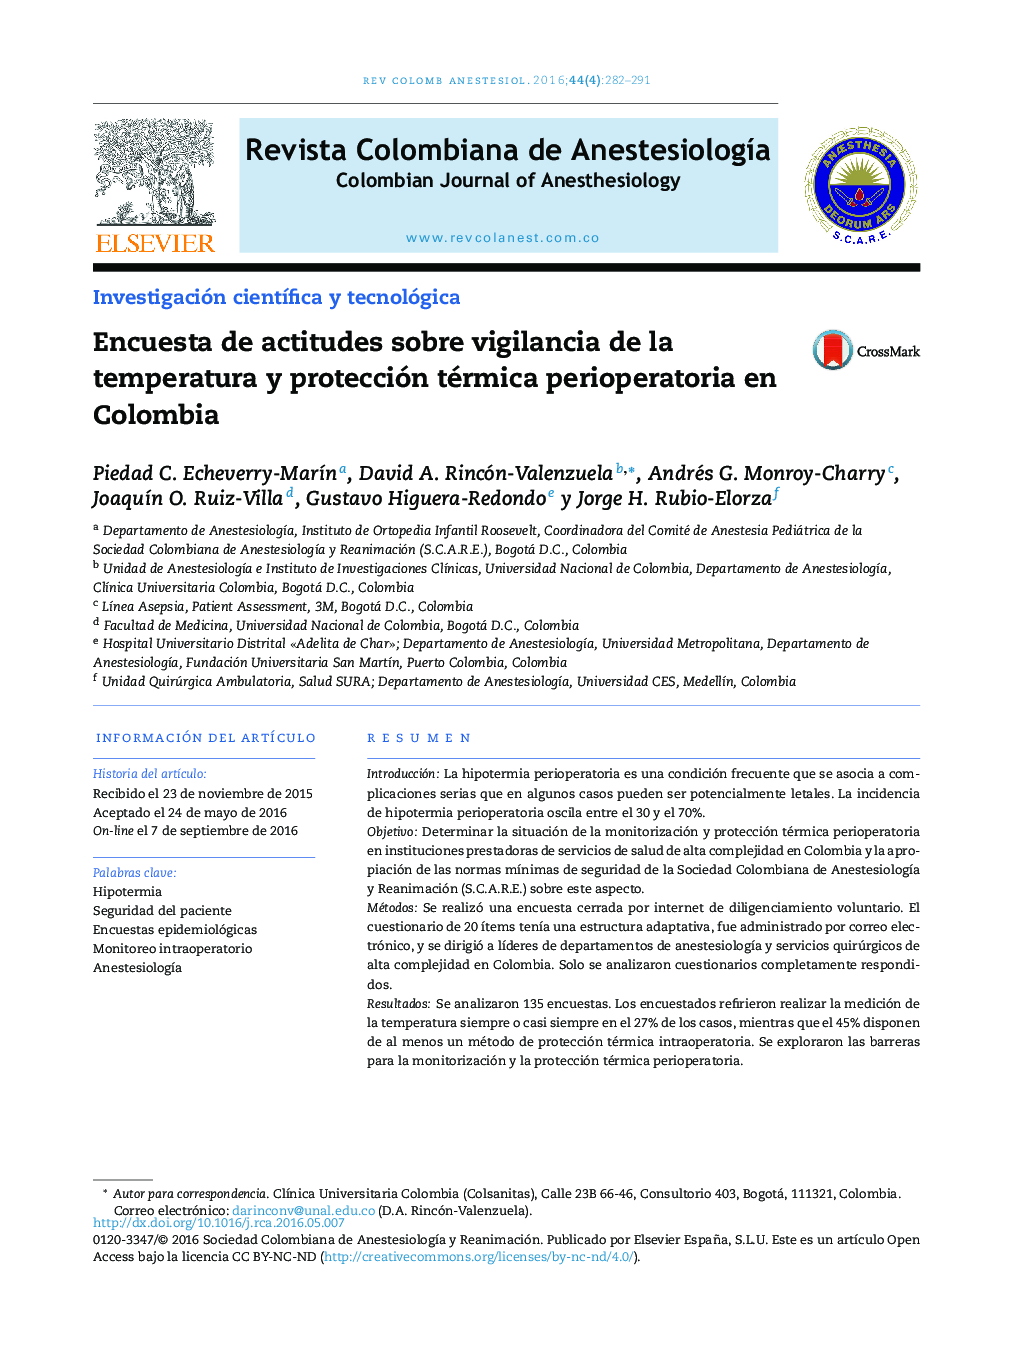 Encuesta de actitudes sobre vigilancia de la temperatura y protección térmica perioperatoria en Colombia